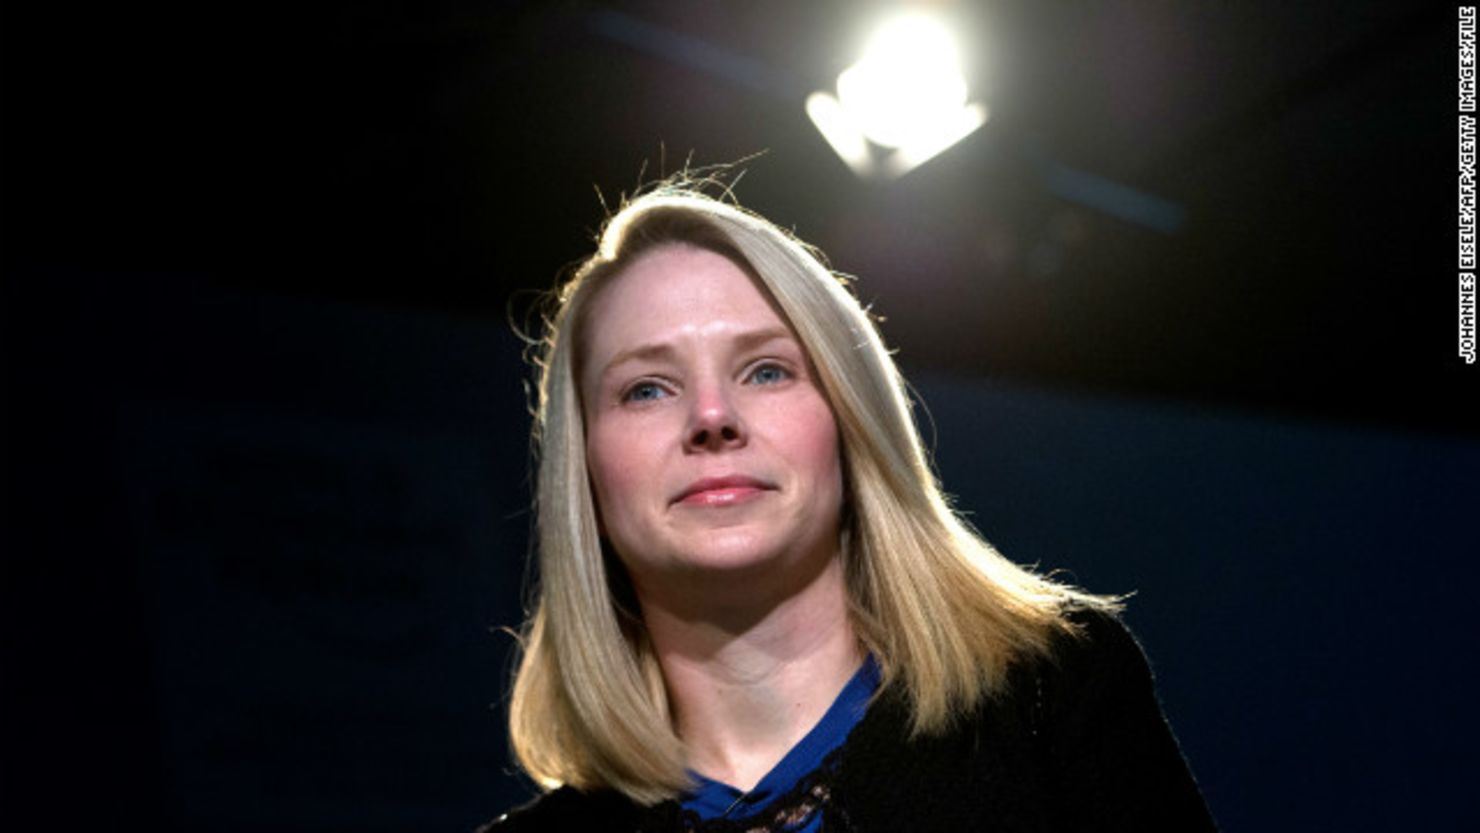 Algunas de las decisiones de Marissa Mayer como CEO de Yahoo han provocado controversia.